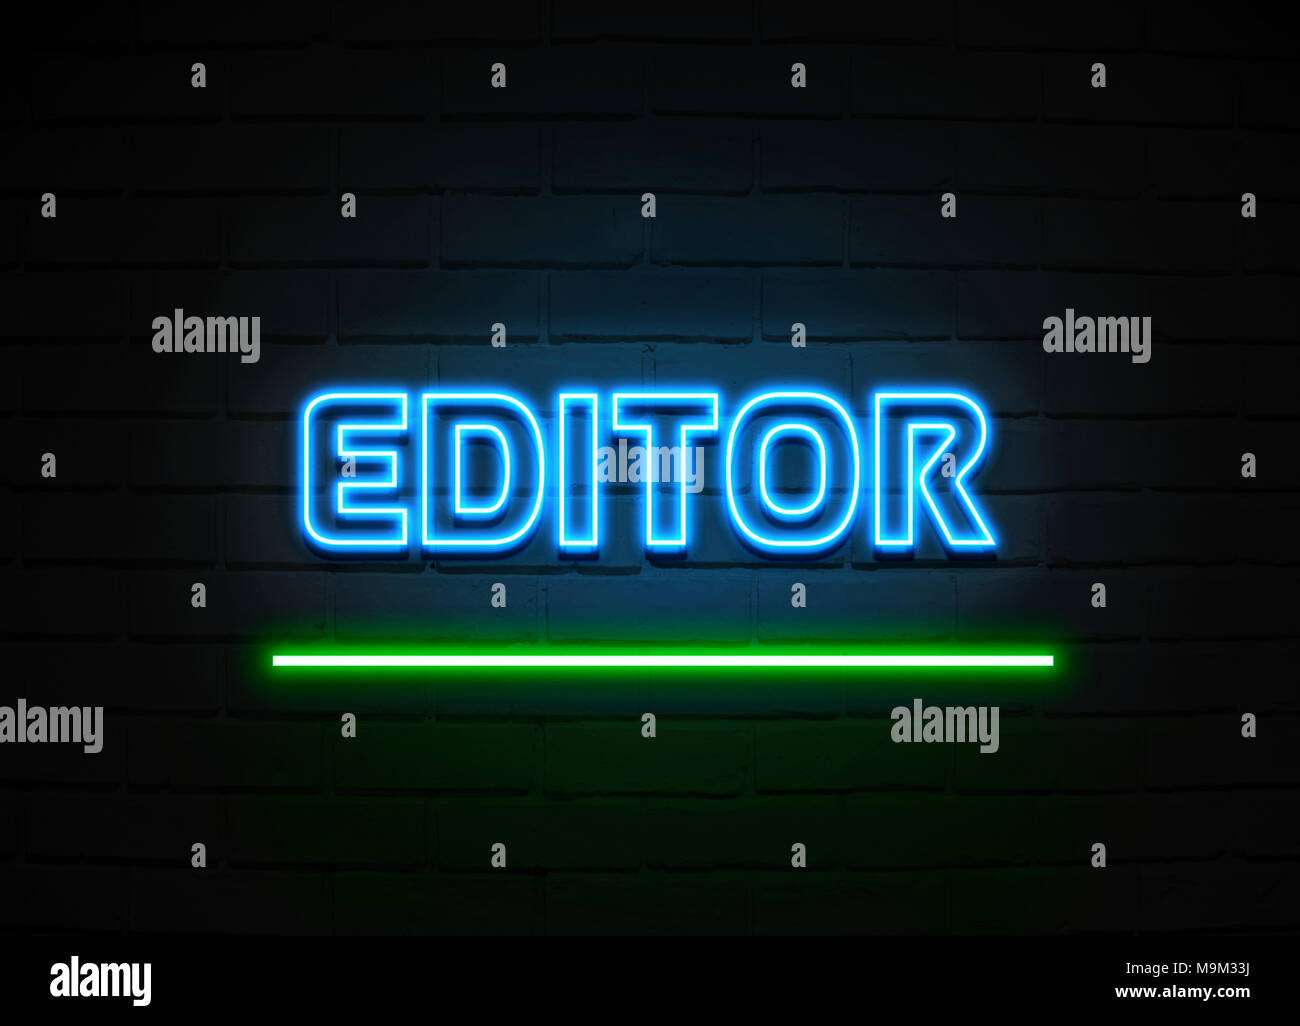 Enseigne au néon de l'éditeur - Glowing Neon Sign sur mur brickwall - rendu 3D illustration libres de droits. Banque D'Images